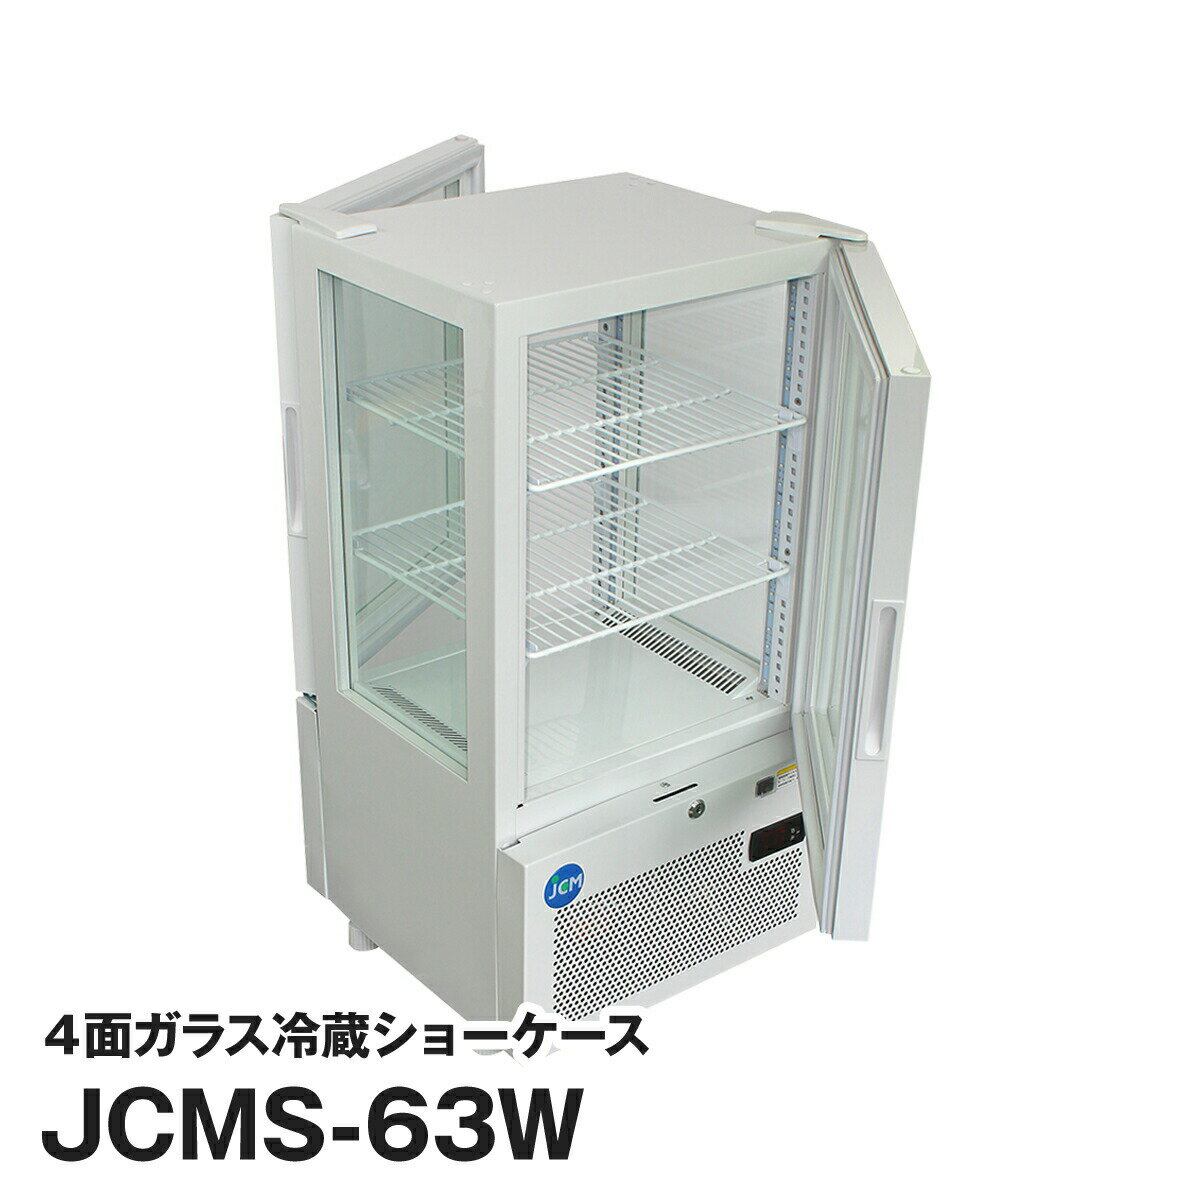 JCM社製 業務用 保冷庫 冷蔵庫 63L 4面 ガラス 冷蔵 ショーケース (両面扉) JCMS-63W 新品